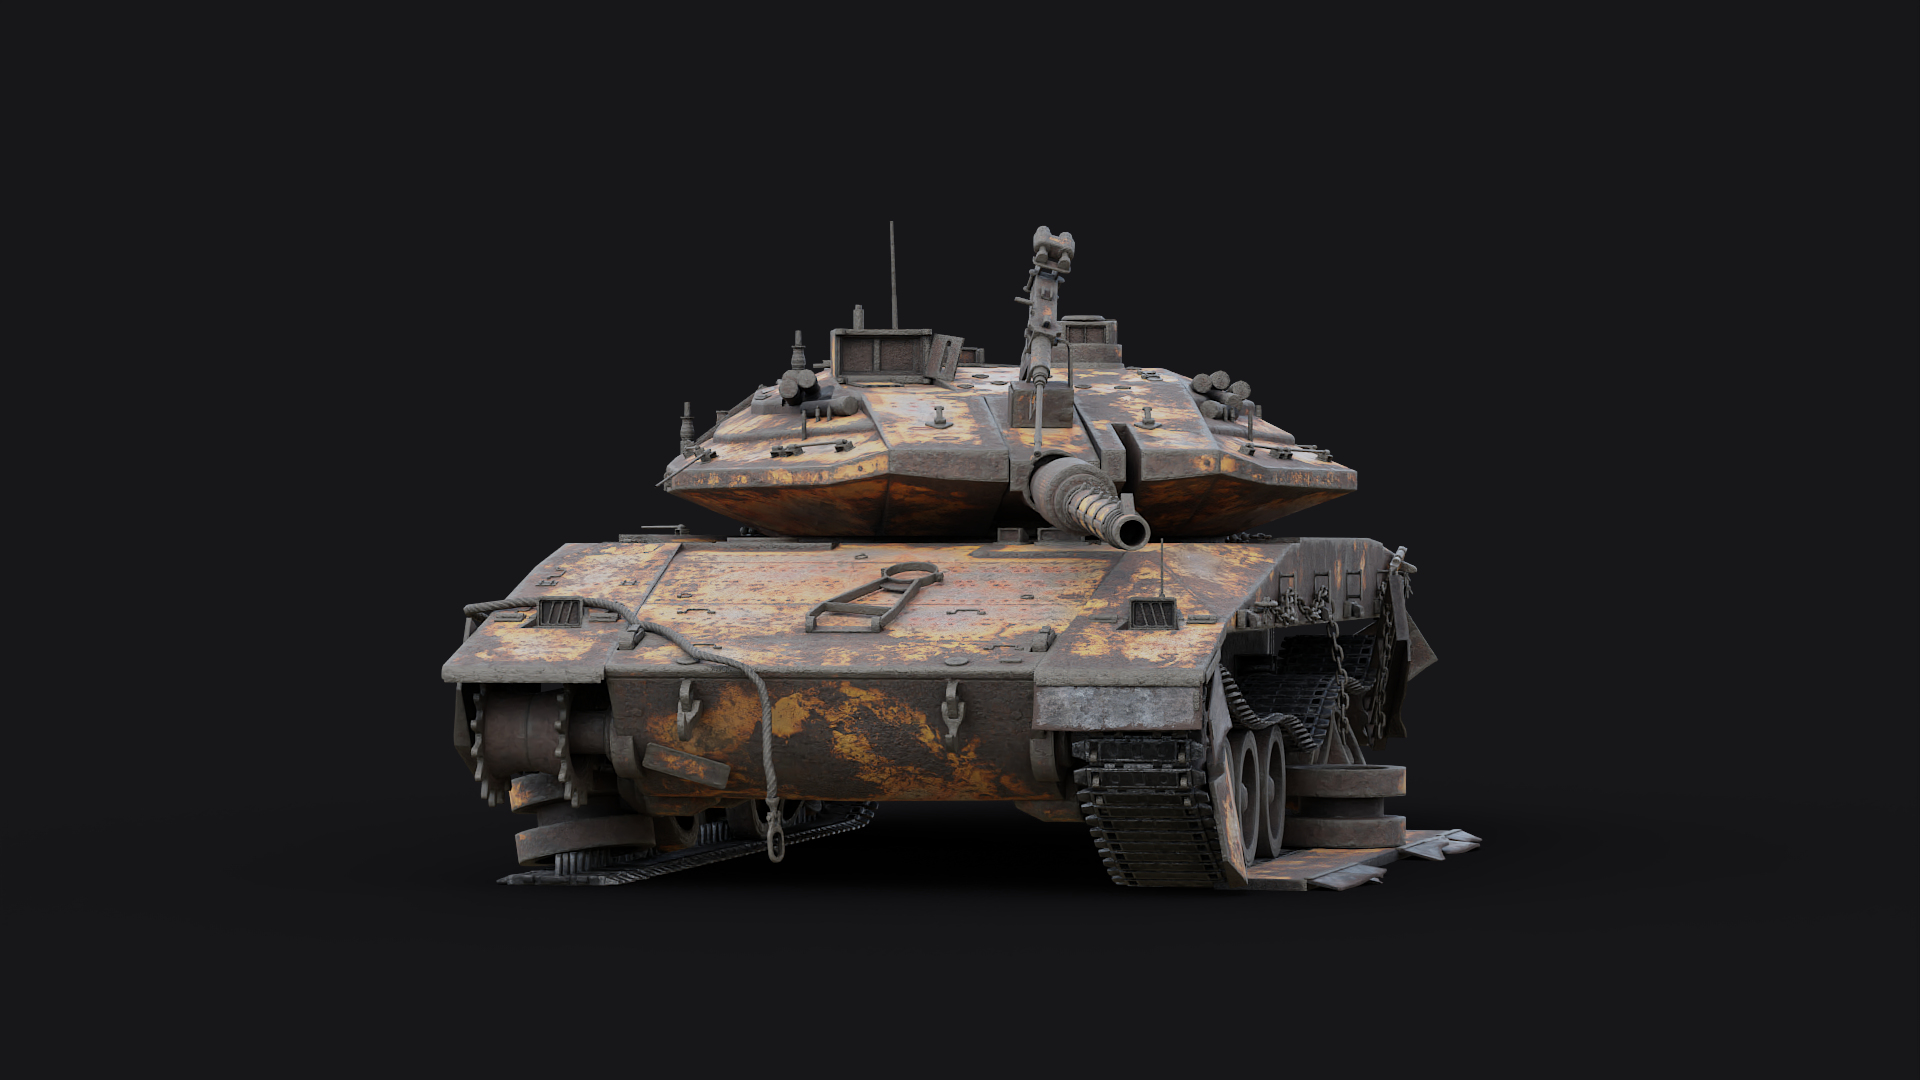 3D Merkava Mk4 Tank Destroyed https://p.turbosquid.com/ts-thumb/Fr/HPeRZ1/kv/z01/png/1702493264/1920x1080/turn_fit_q99/60a62d1e9391d008fdb194b9185a422be3377cde/z01-1.jpg